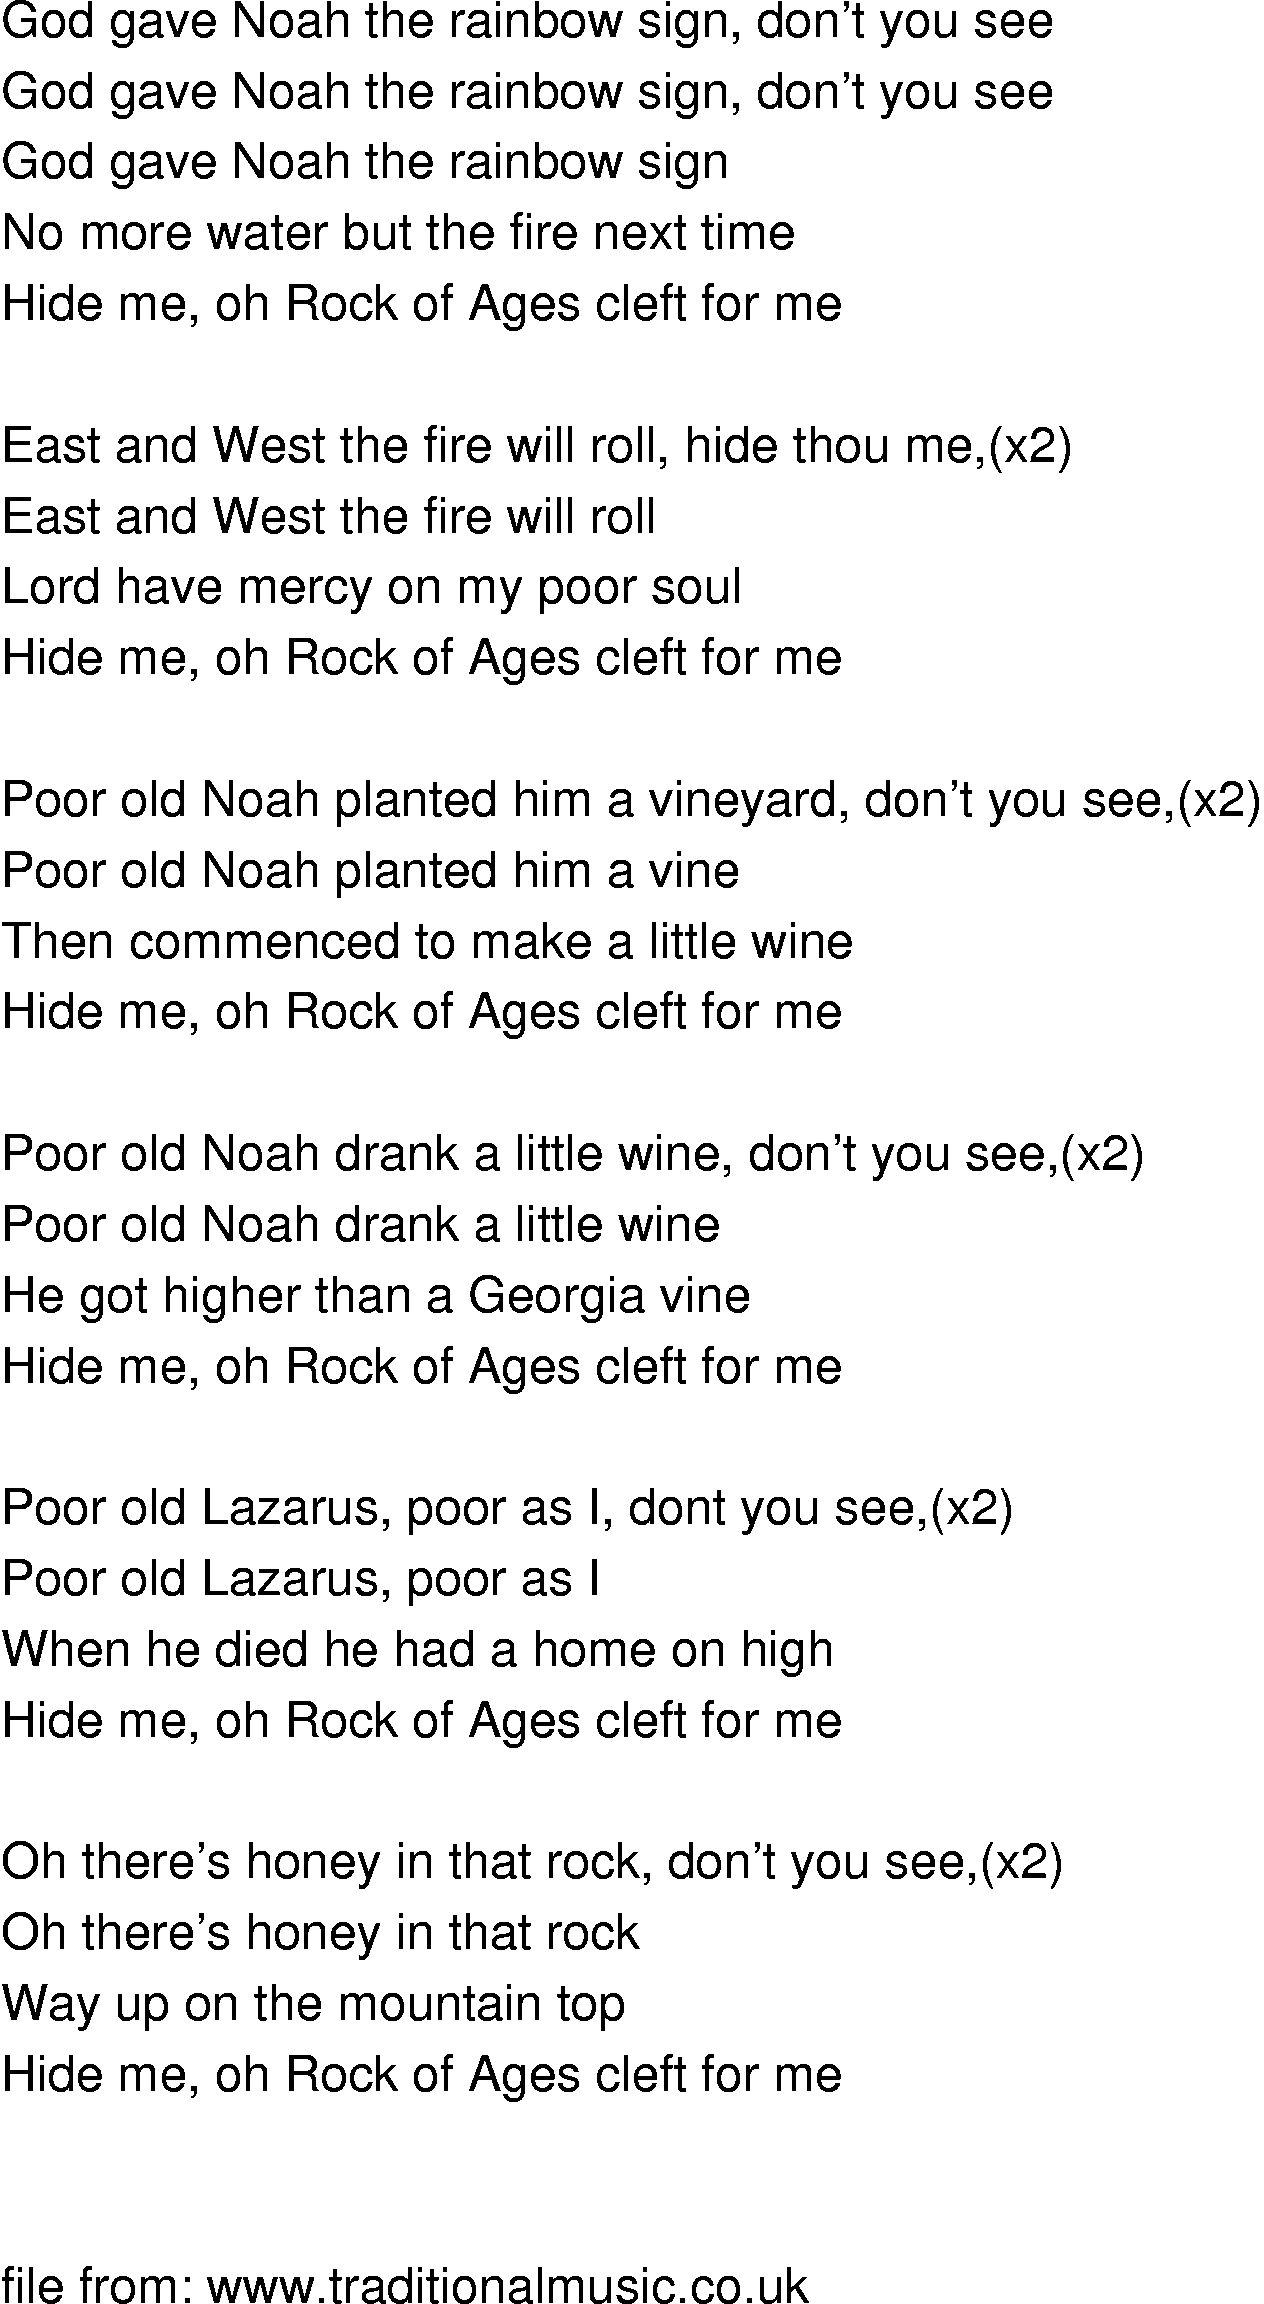 Old-Time (oldtimey) Song Lyrics - god gave noah the rainbow sign